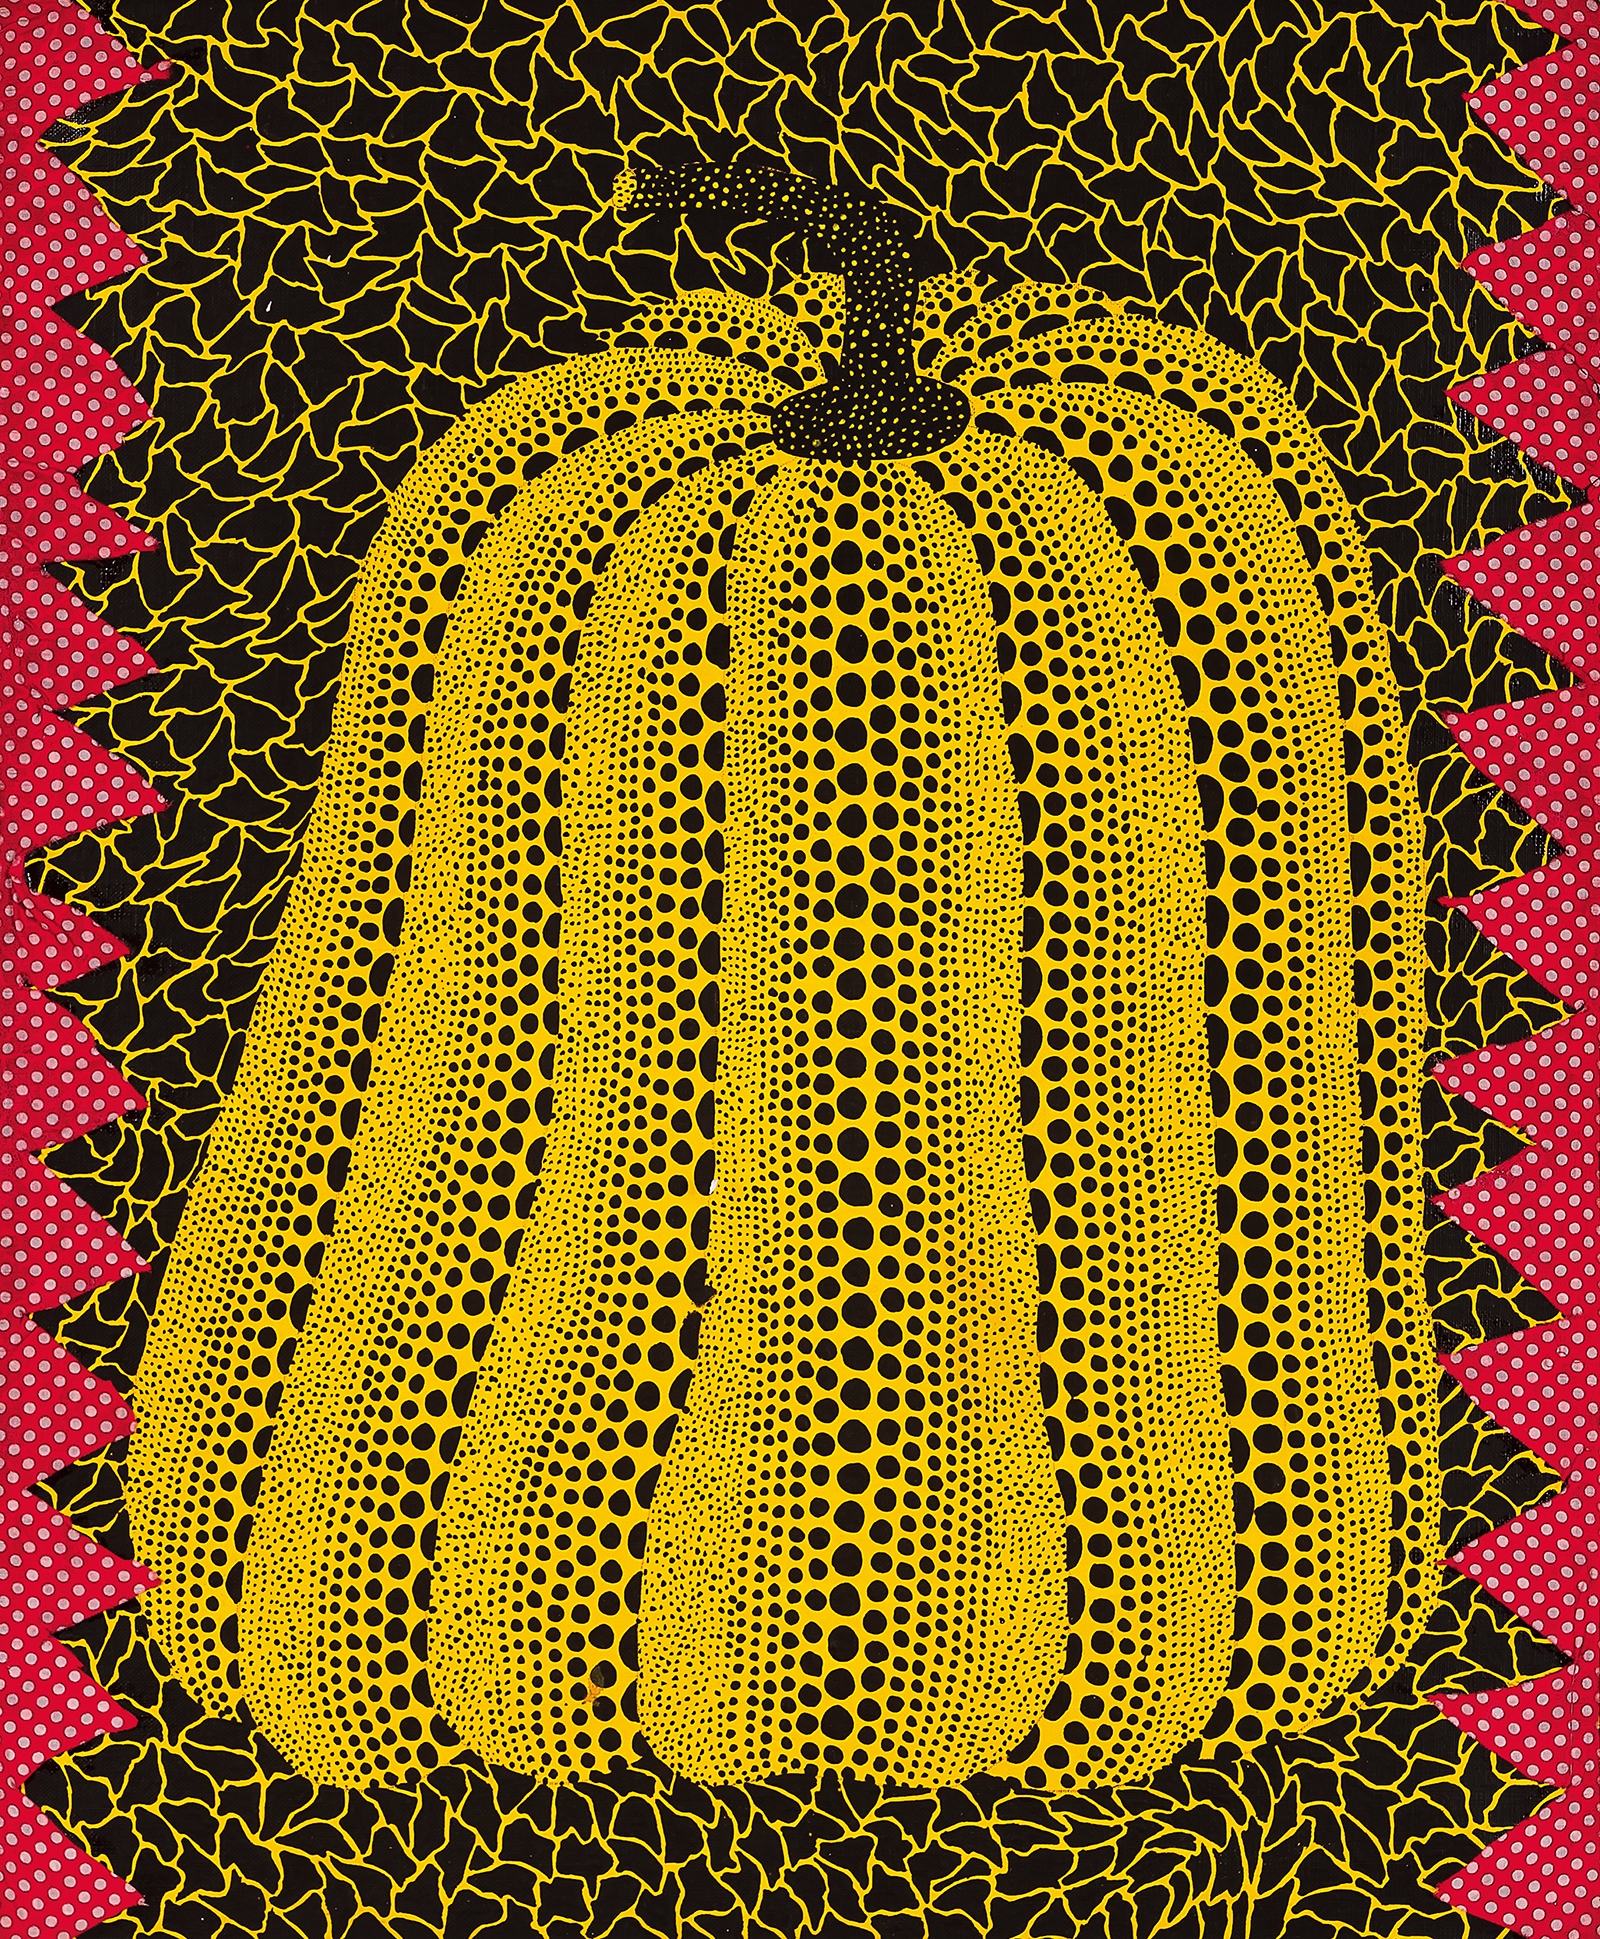 Pumpkin by Yayoi Kusama, 1981